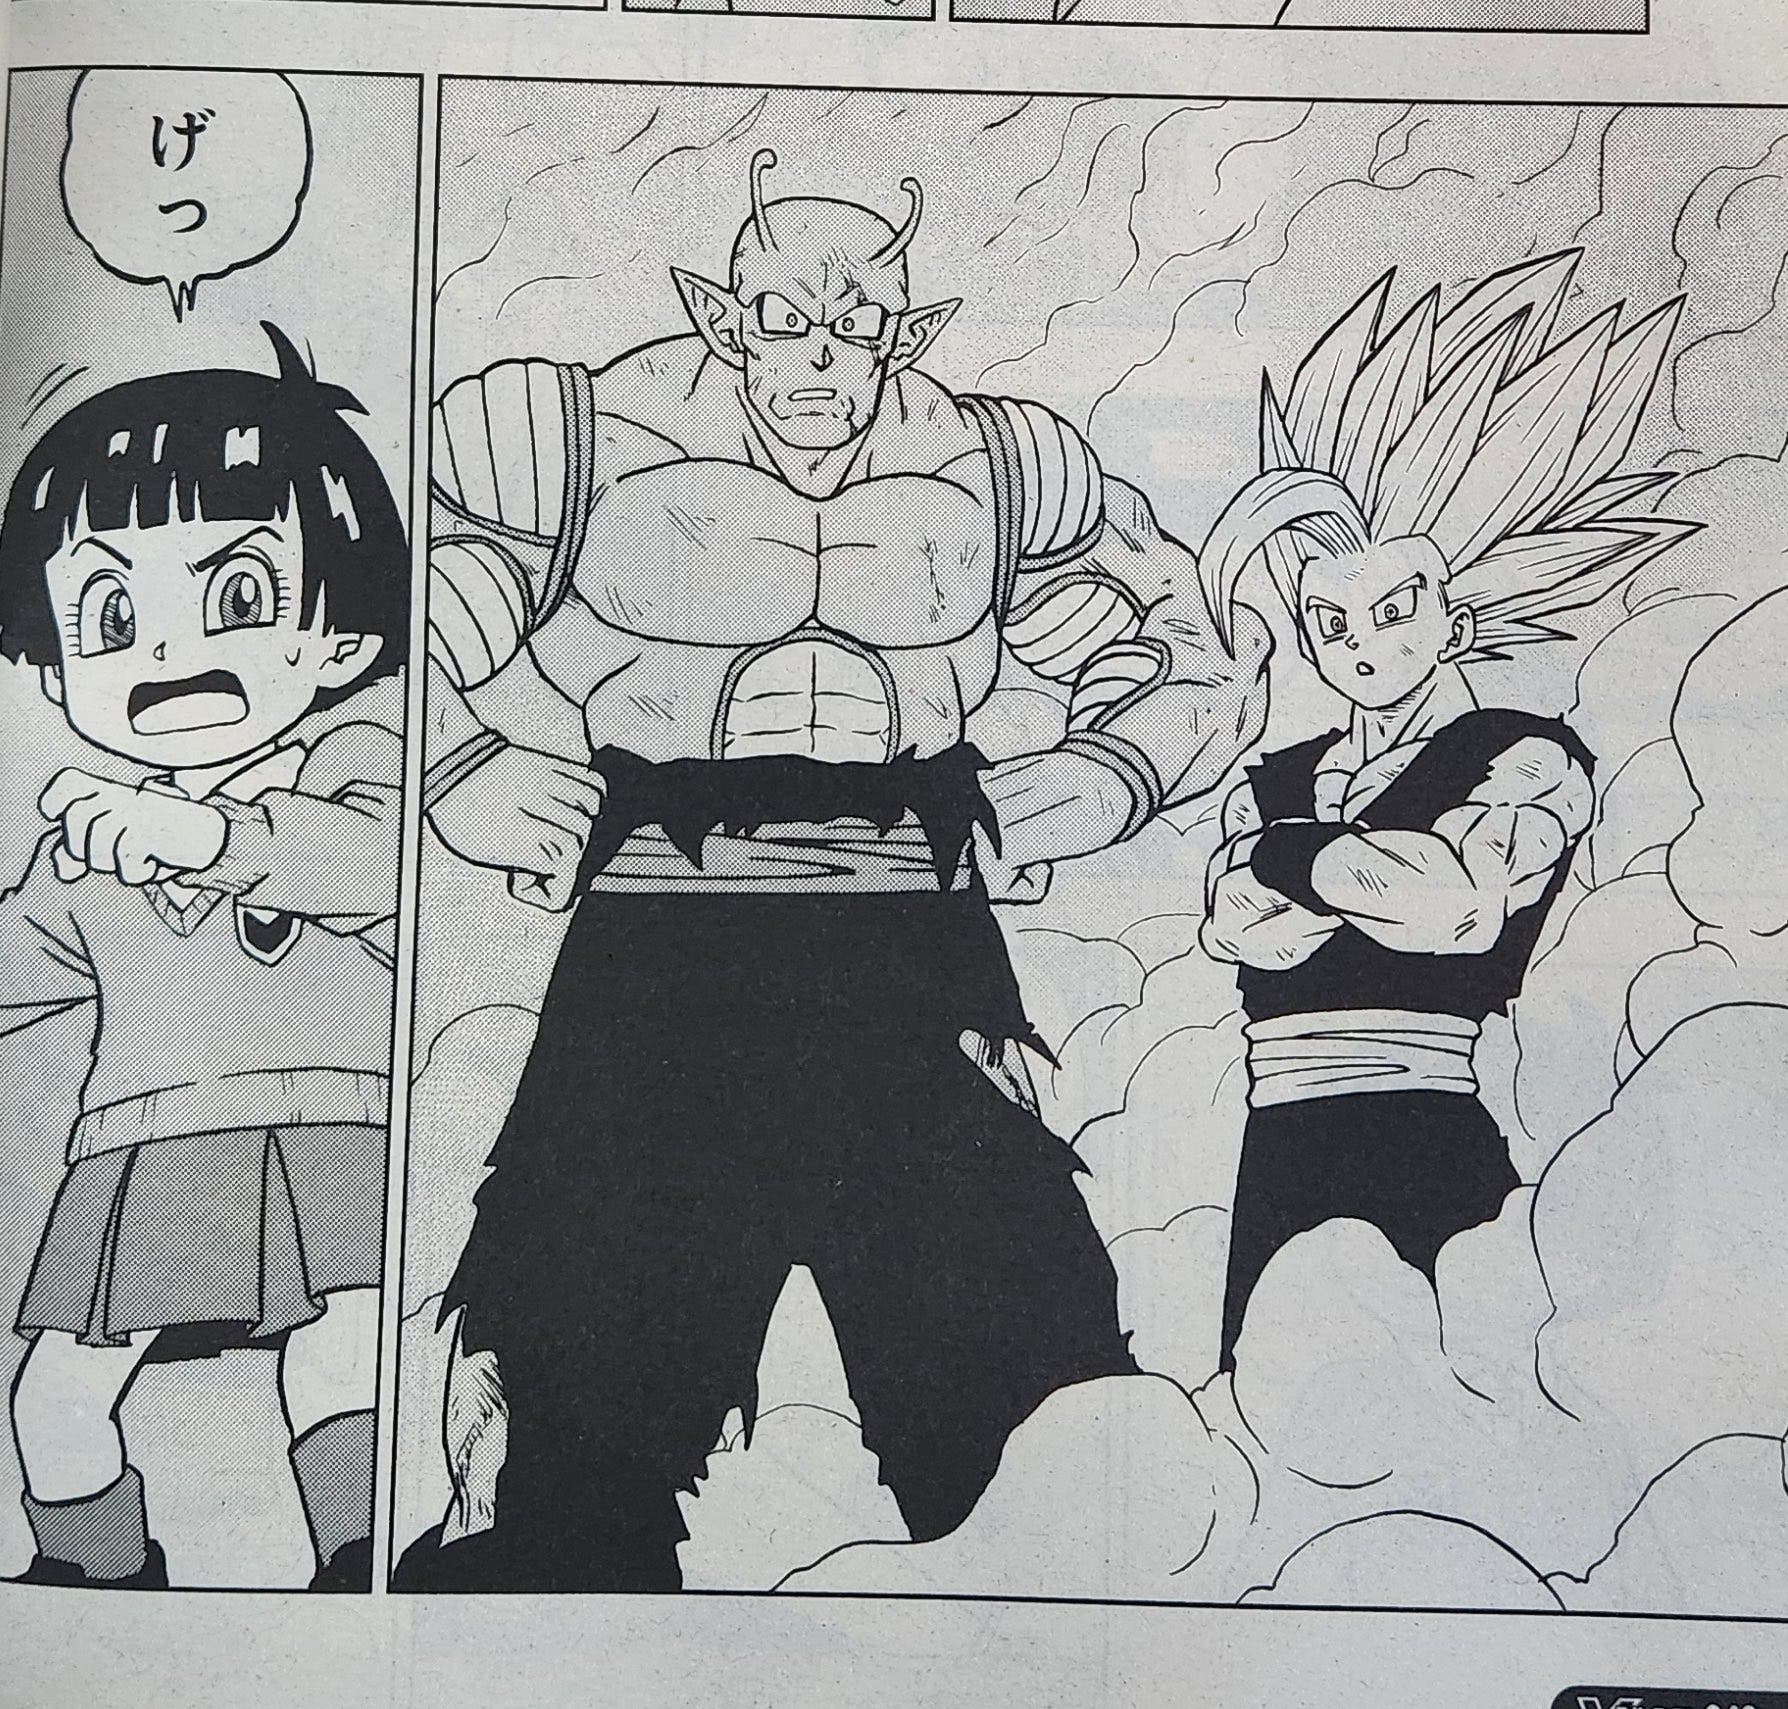 Dragon Ball Super y el capítulo 100 del manga podría traer algo